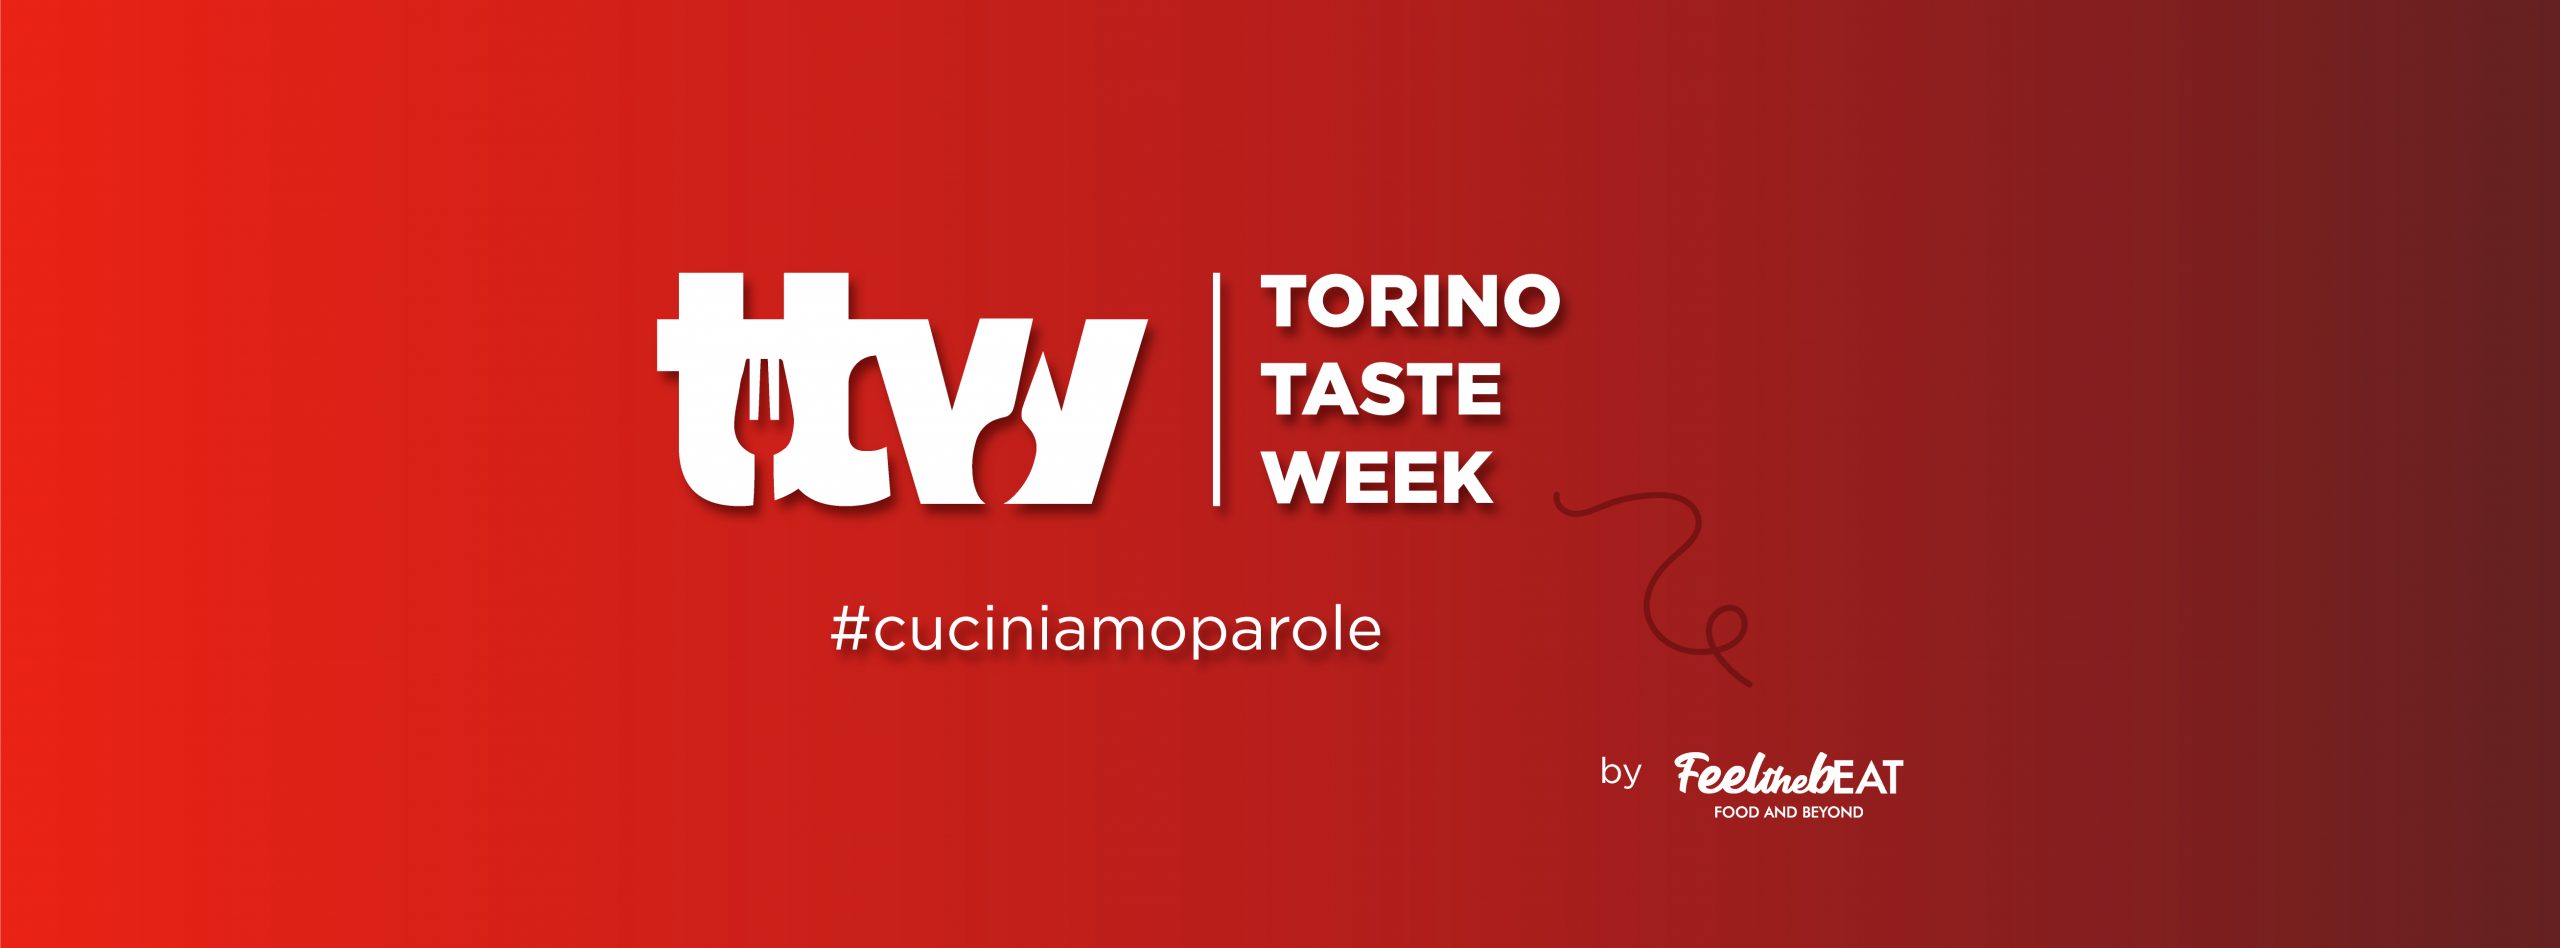 Torino Taste Week